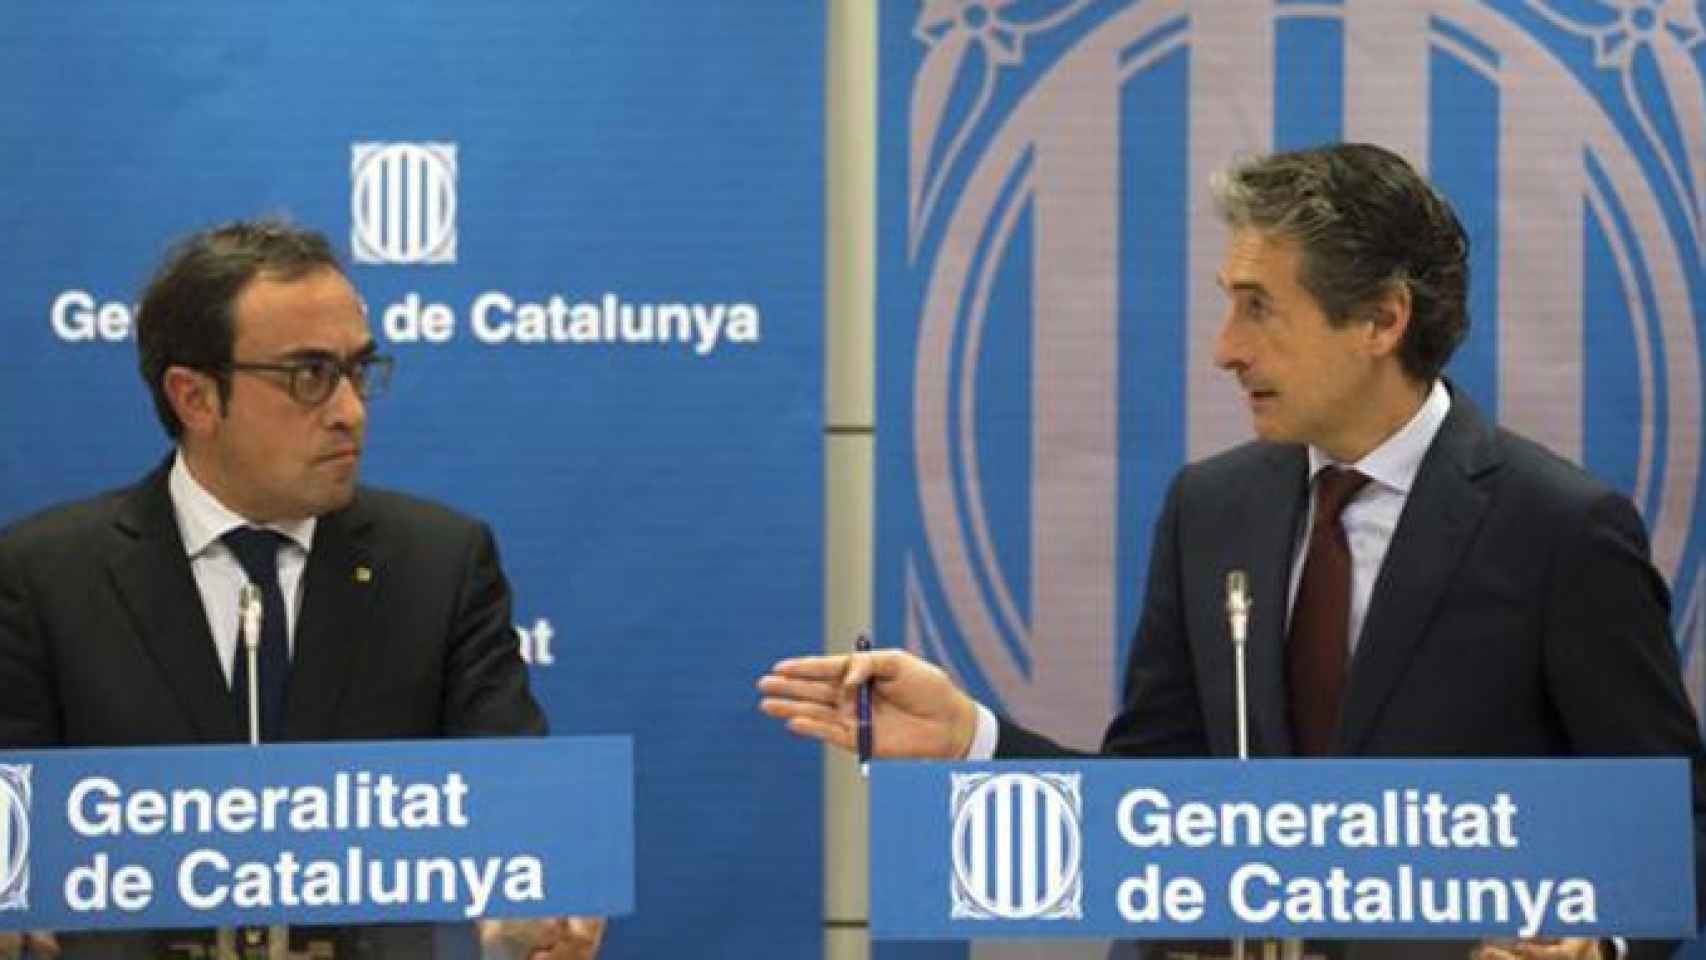 El consejero de Territorio, Josep Rull, y el ministro de Fomento, íñigo de la Serna, en la rueda de prensa conjunta que no agradó al presidente Carles Puigdemont / EFE